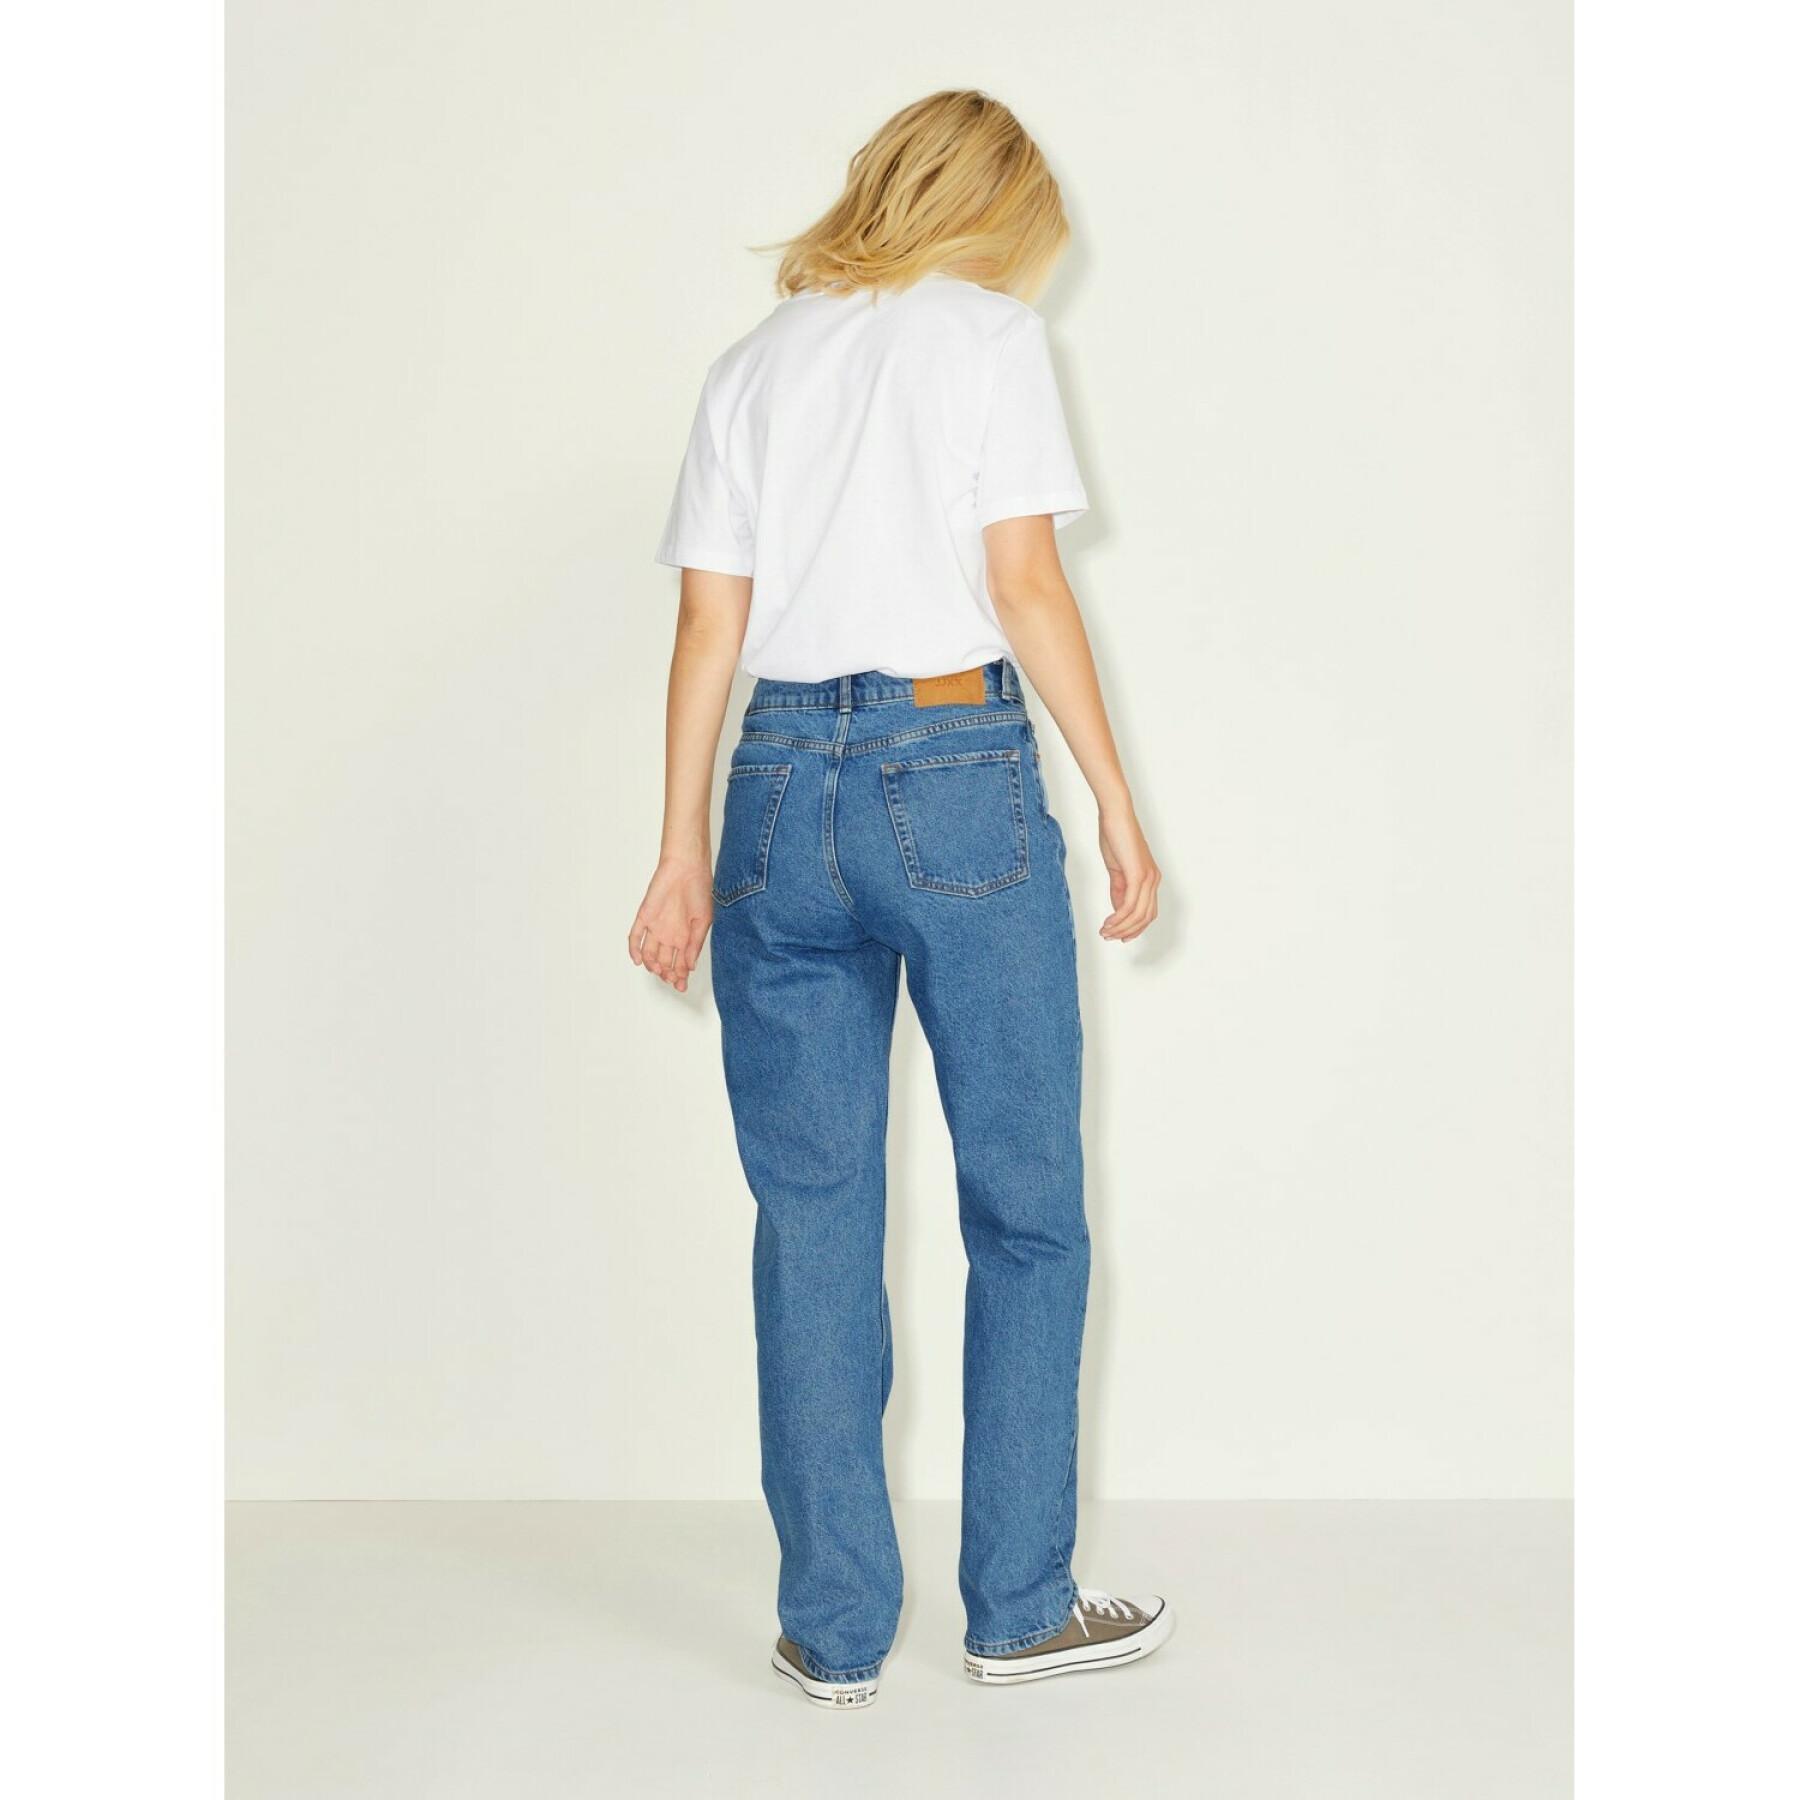 Rechte jeans voor dames JJXX seoul nr3002